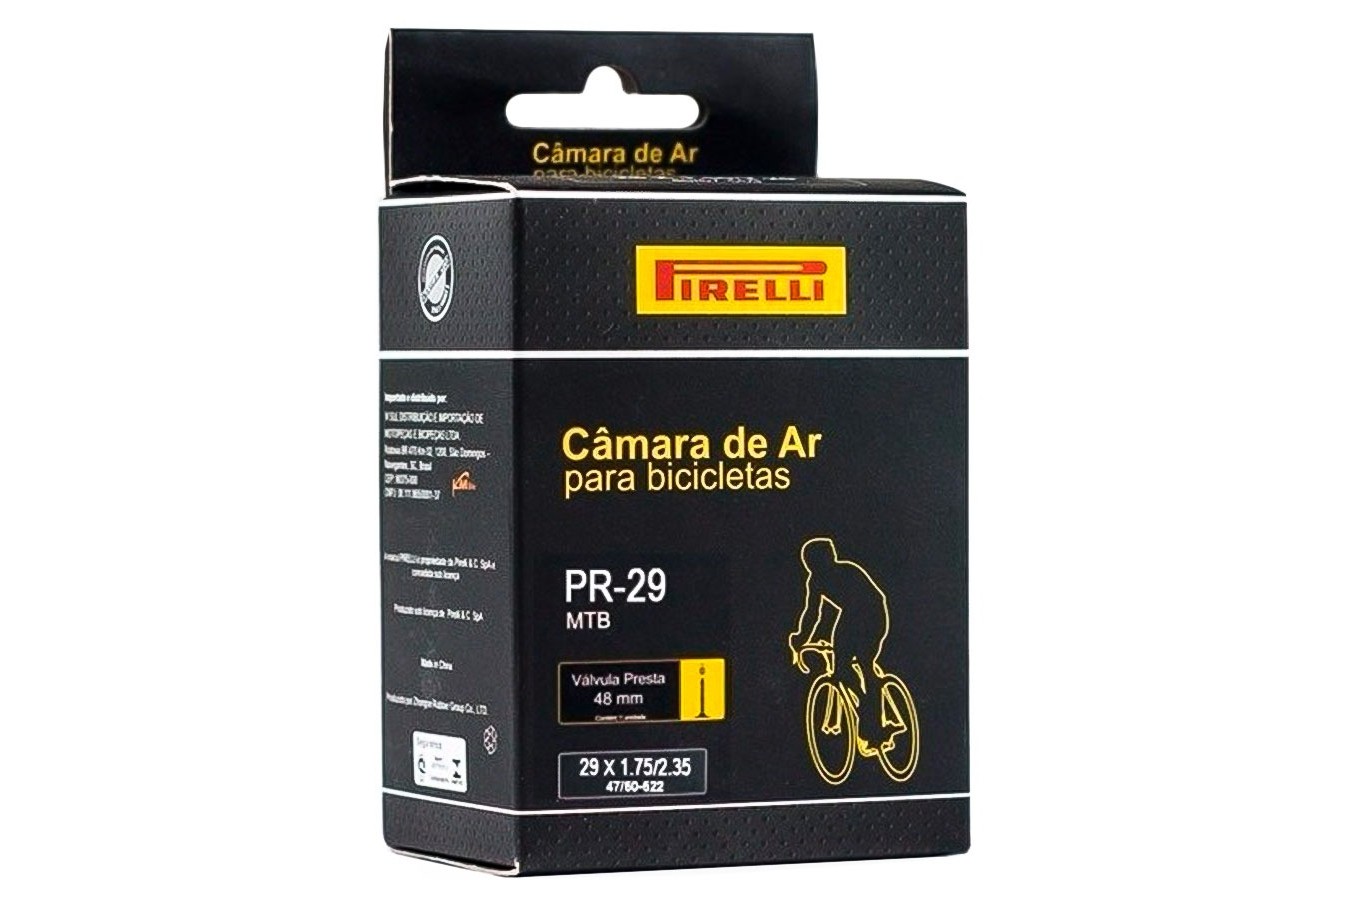 Câmara De Ar 29 x 1.75/2.35, Com Válvula  Presta De 48mm - Pirelli